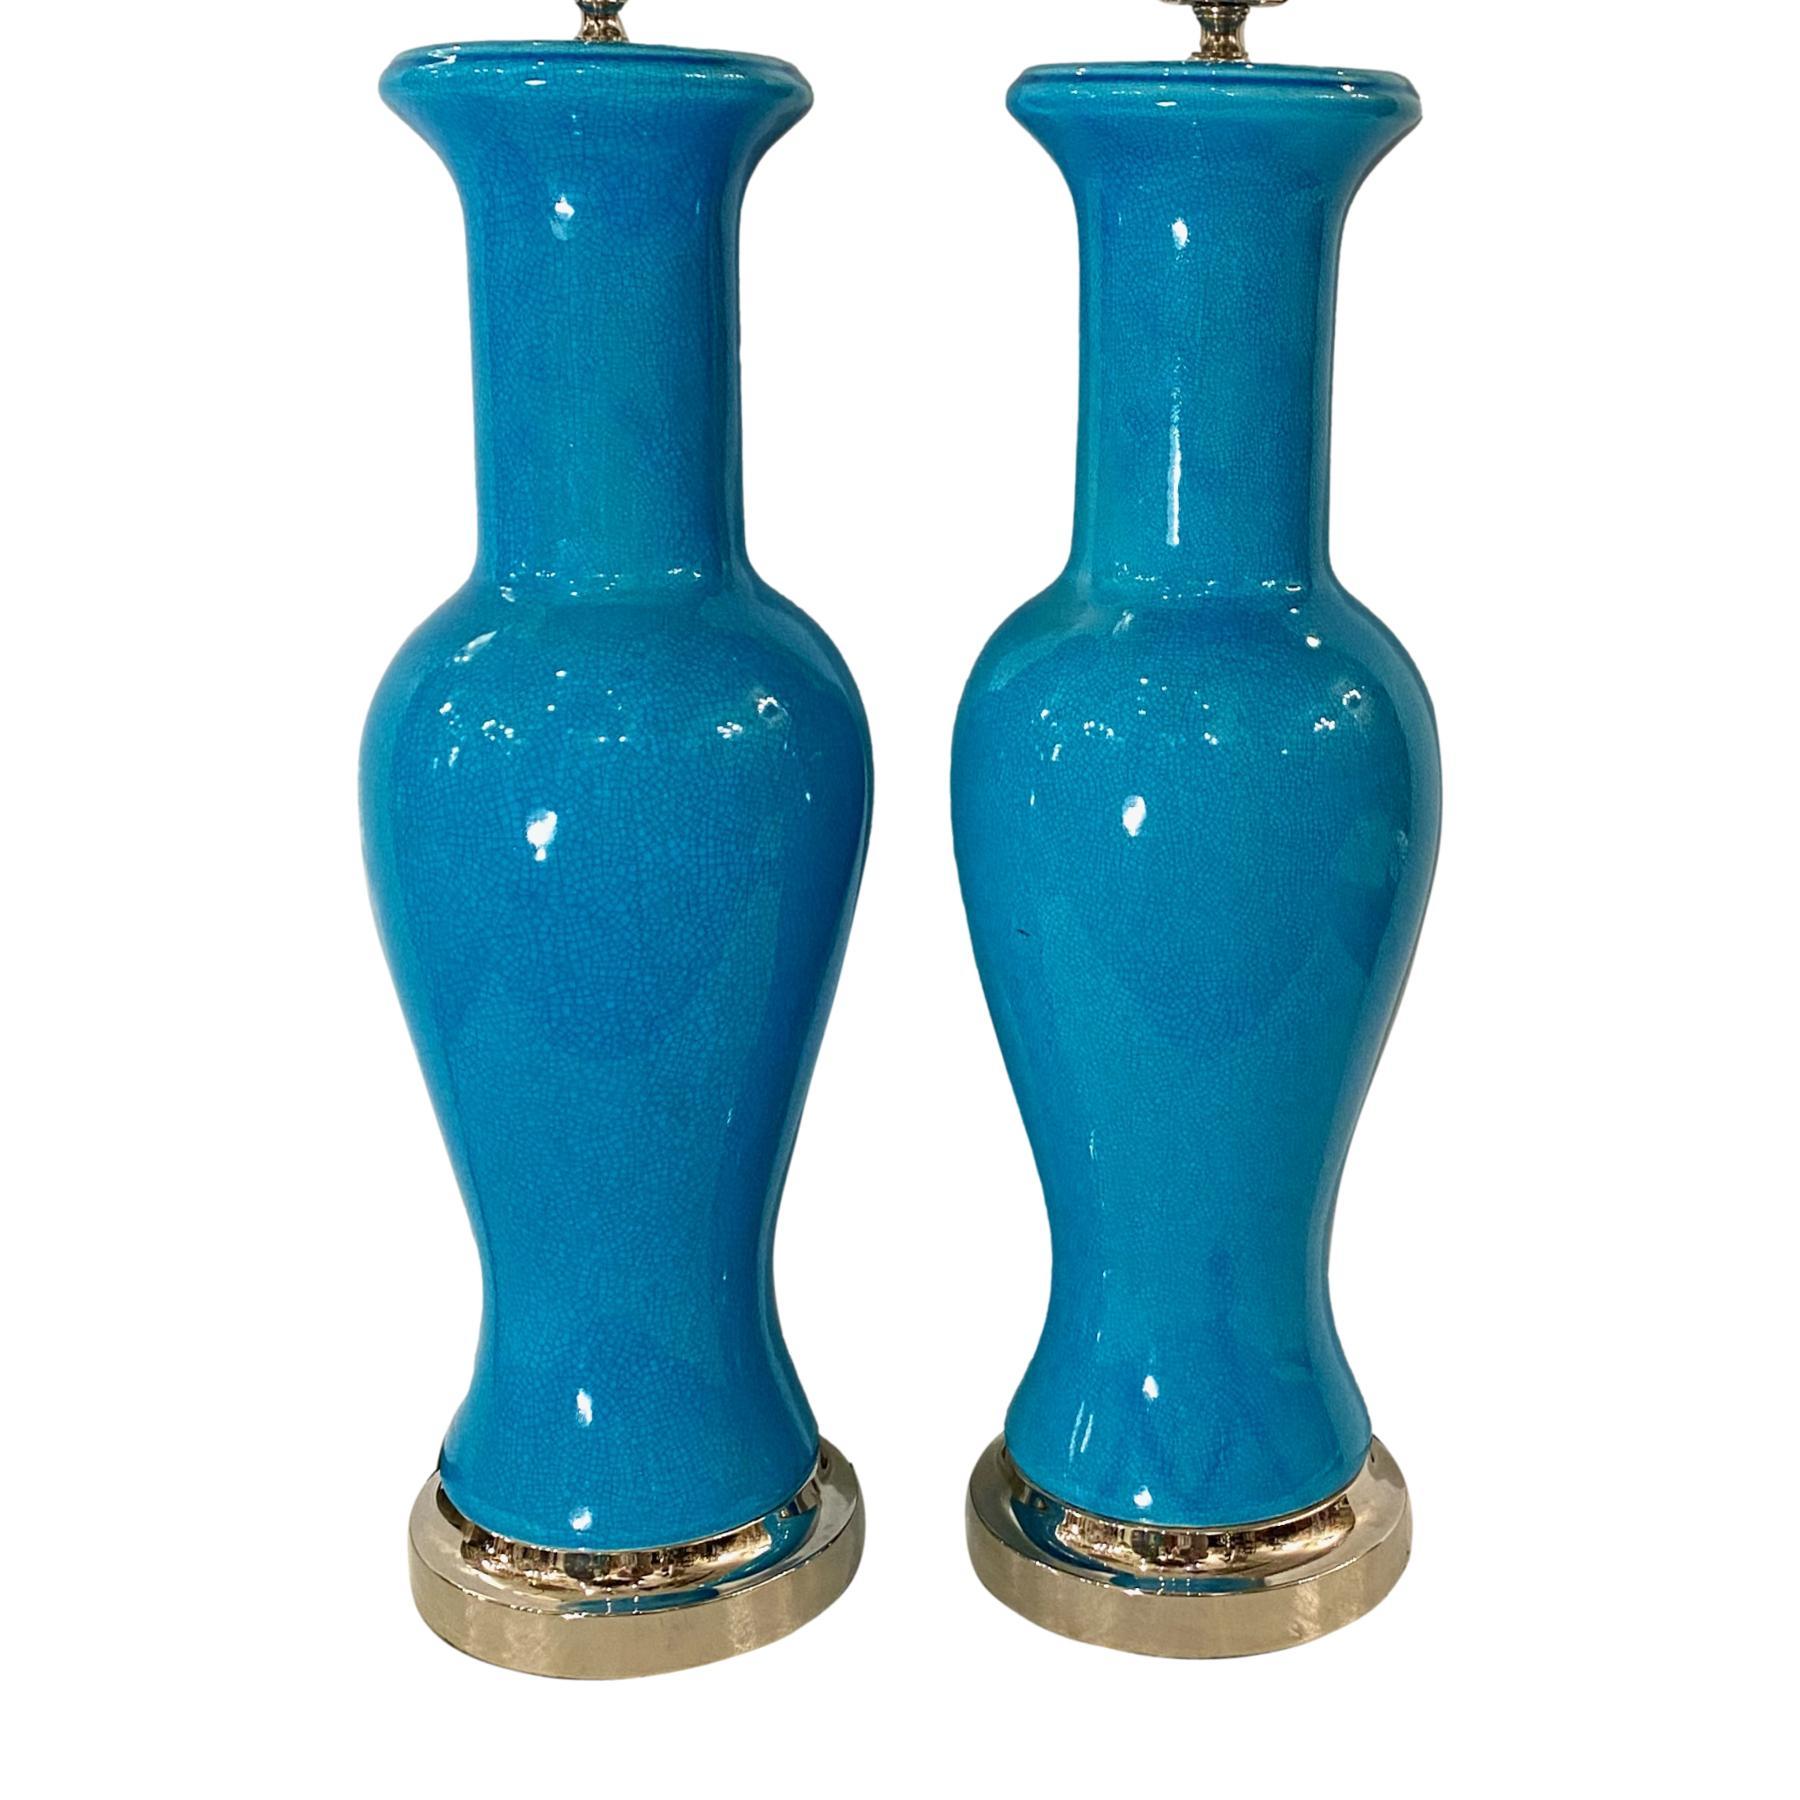 Paire de lampes de table françaises en forme de vase, en porcelaine bleu turquoise émaillée de craquelures, avec bases nickelées, datant des années 1940.

Mesures
Hauteur du corps : 2o